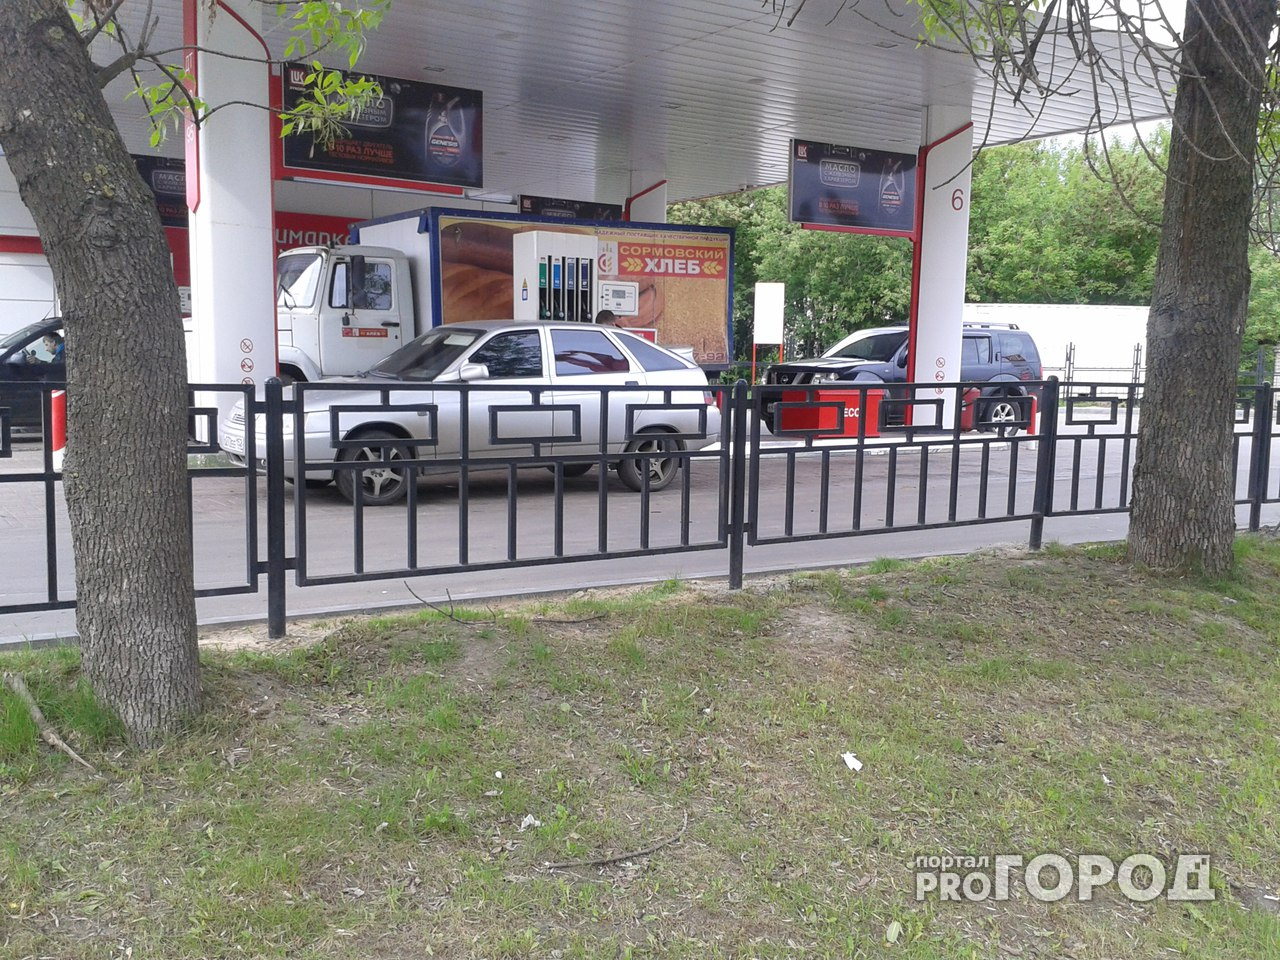 Конфликт на нижегородской автозаправке закончился стрельбой